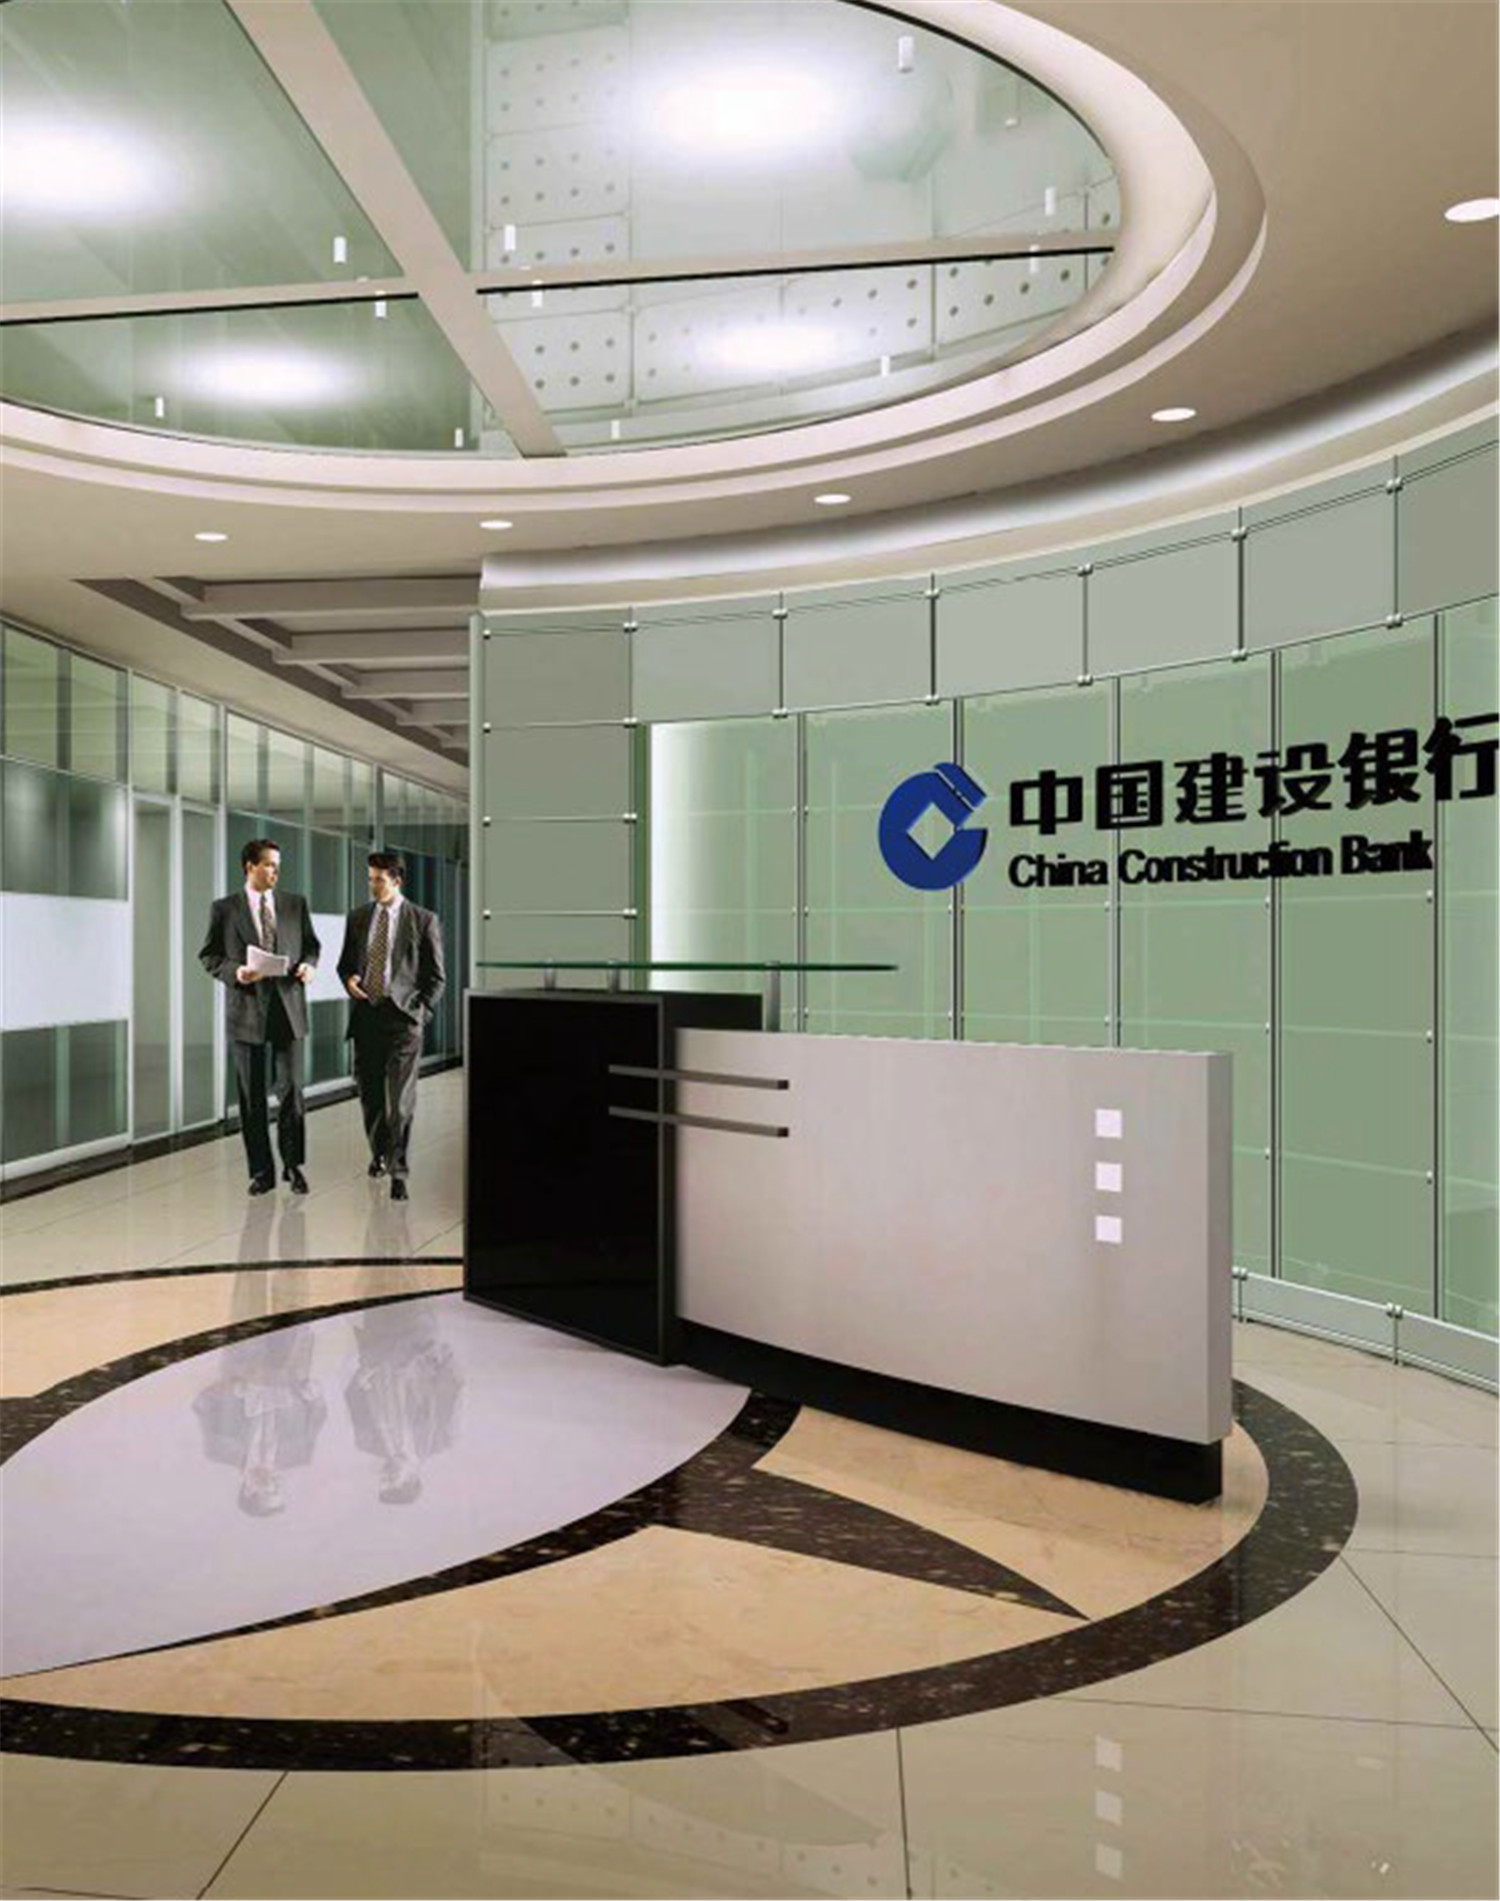 黑龙江省建设银行开发区分行